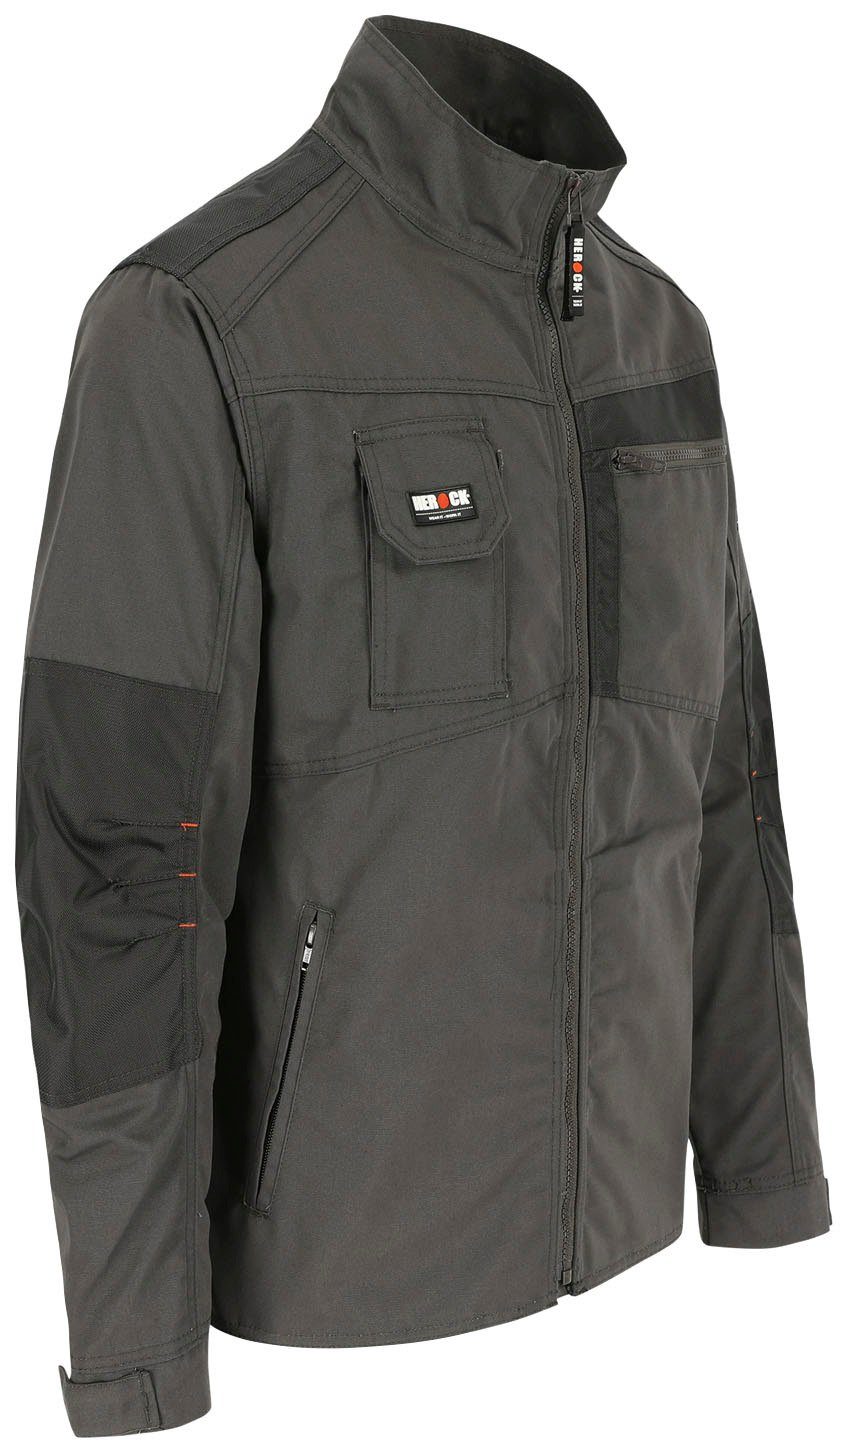 7 - - Bündchen robust - Anzar Taschen Arbeitsjacke Jacke Herock verstellbare Wasserabweisend grau